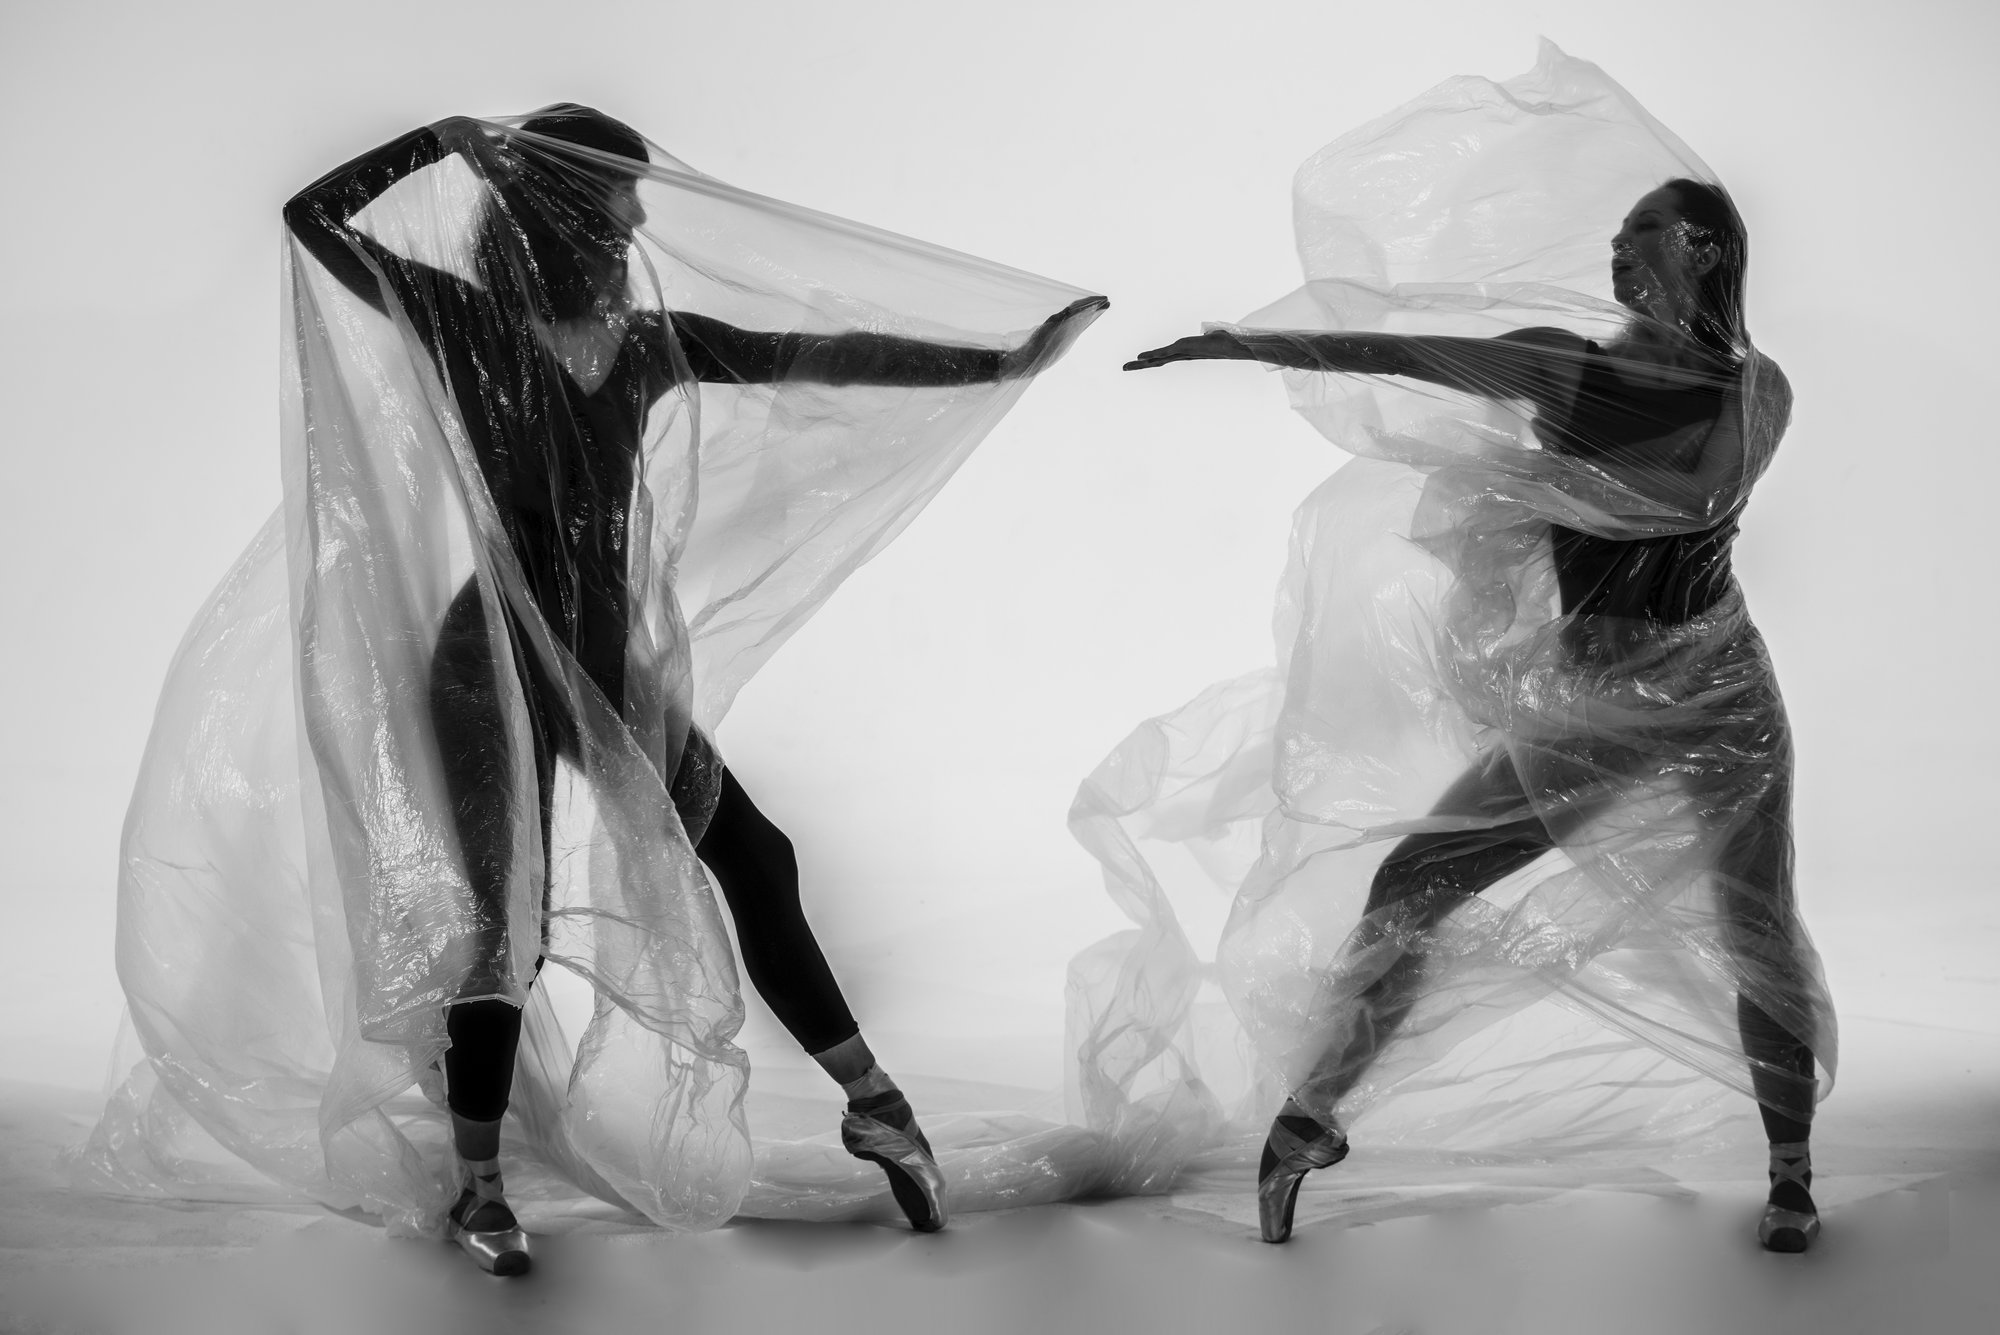 Zwei Ballerinen tanzen unter einer durchsichtigen Plastikplane
Bild: Nihal Demirci